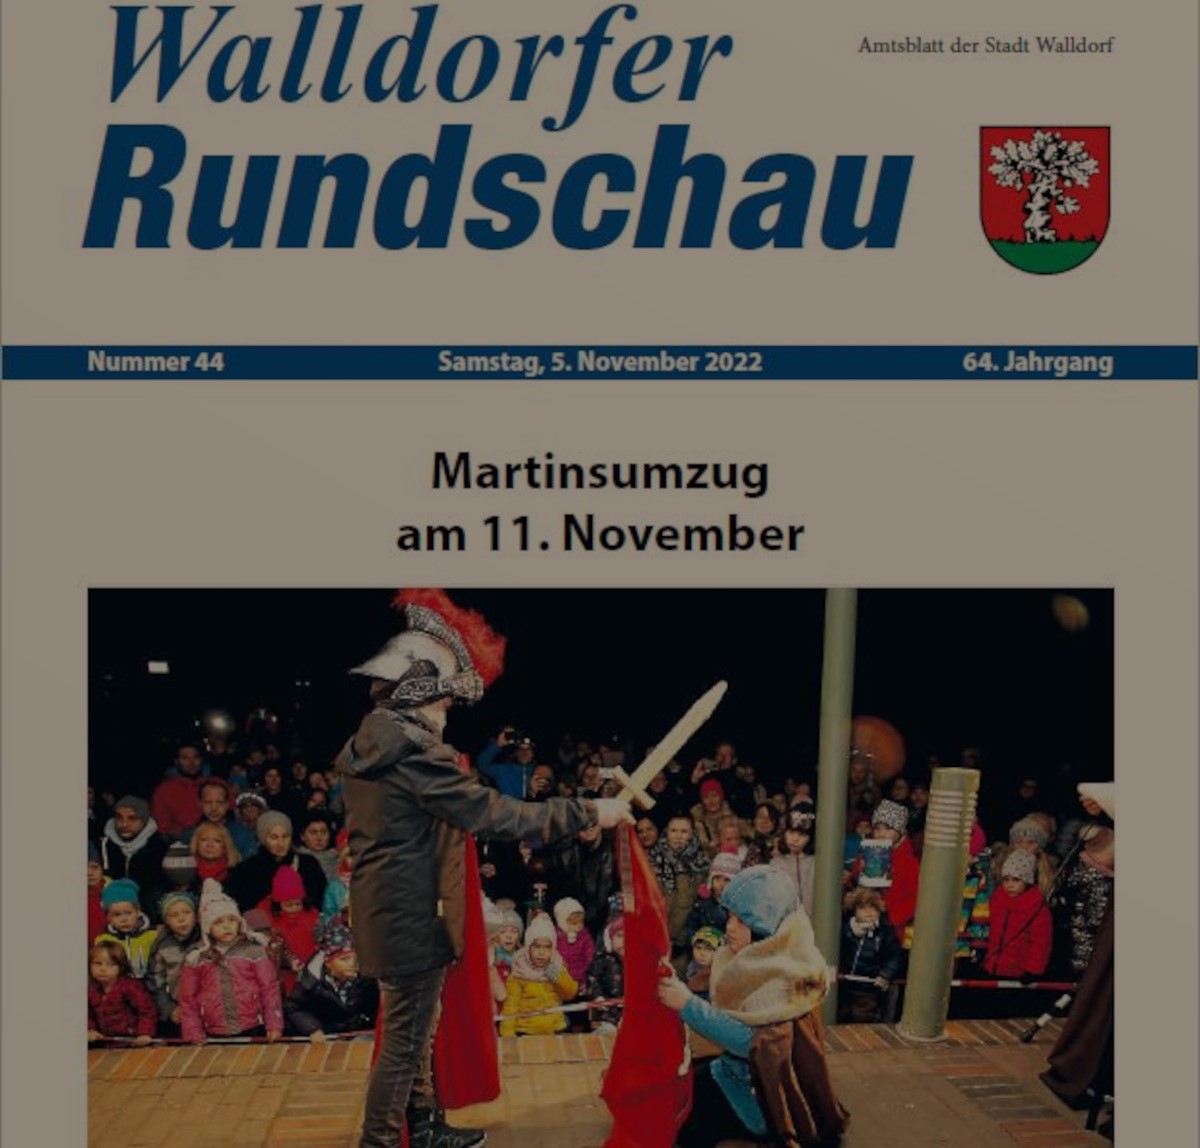 Die Walldorfer Rundschau 2022 Nr. 44 als E-paper | Bildschirmabgriff